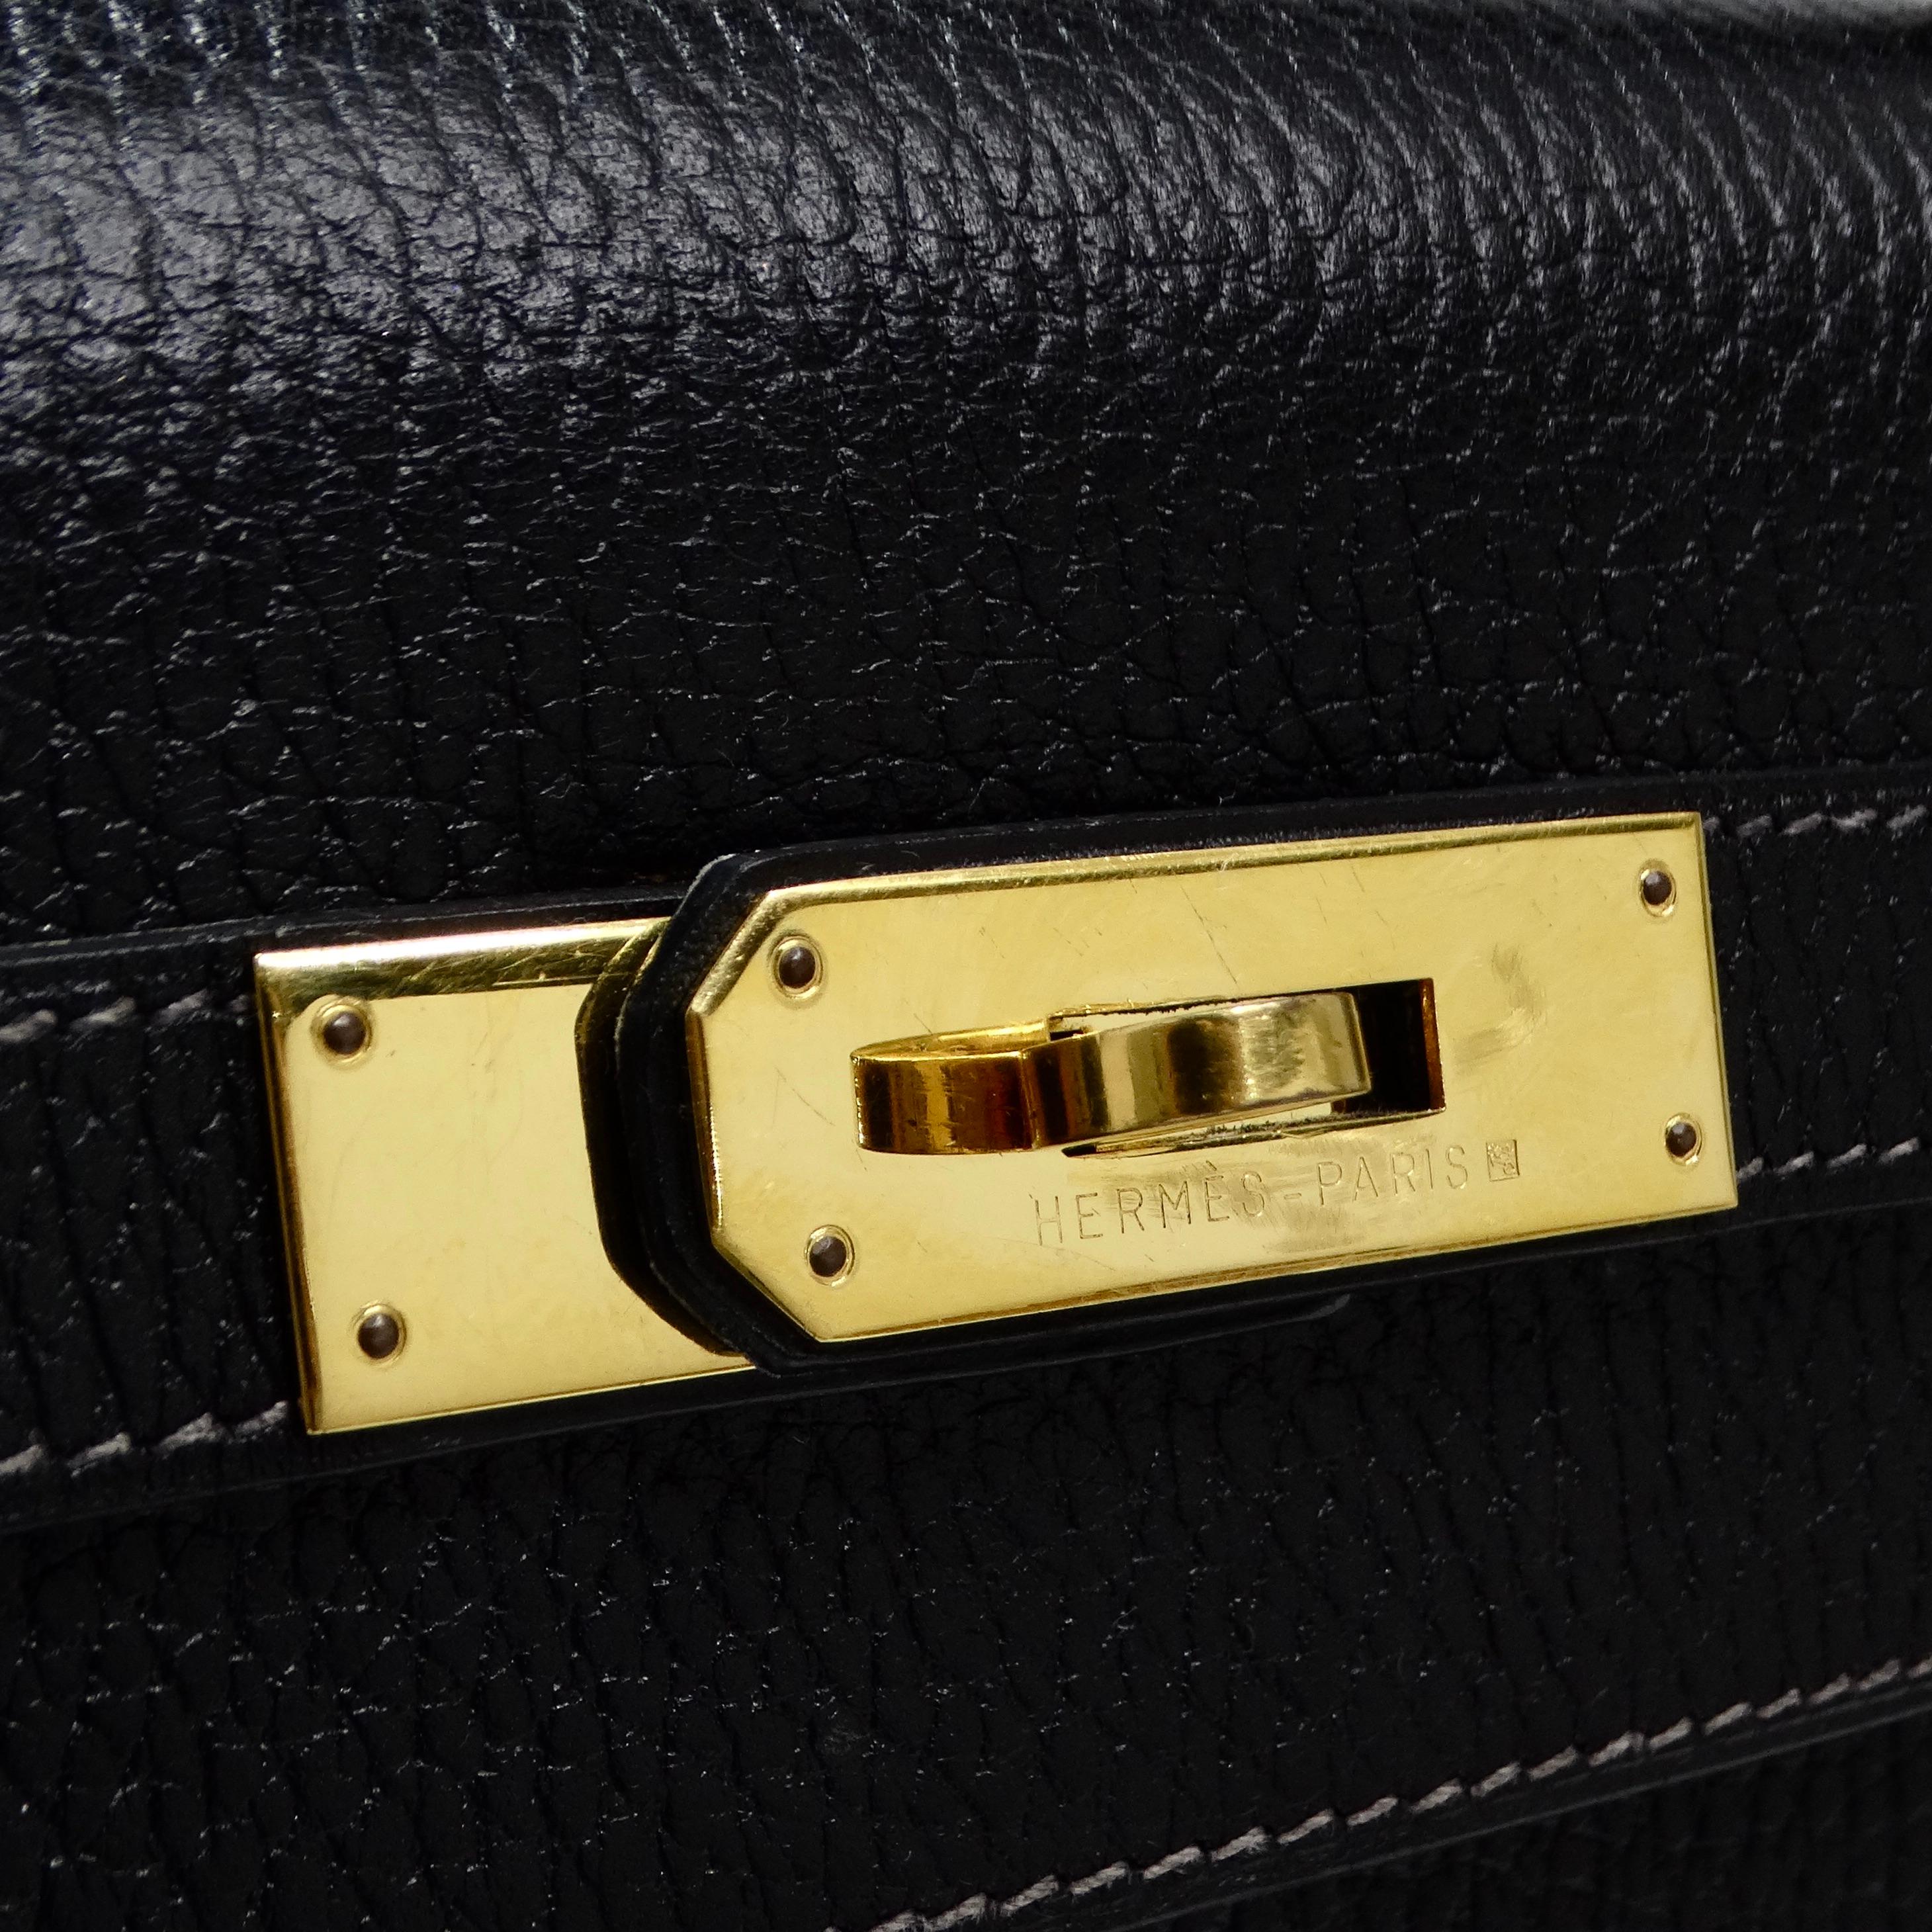 Die zeitlose Eleganz der Hermes Kelly 1993 Black Ardennes Leather 32 cm Handtasche. Diese kultige Handtasche aus luxuriösem Ardennenleder in klassischem Schwarz und mit exquisiten Goldbeschlägen verziert ist ein Vintage-Schmuckstück, das Raffinesse